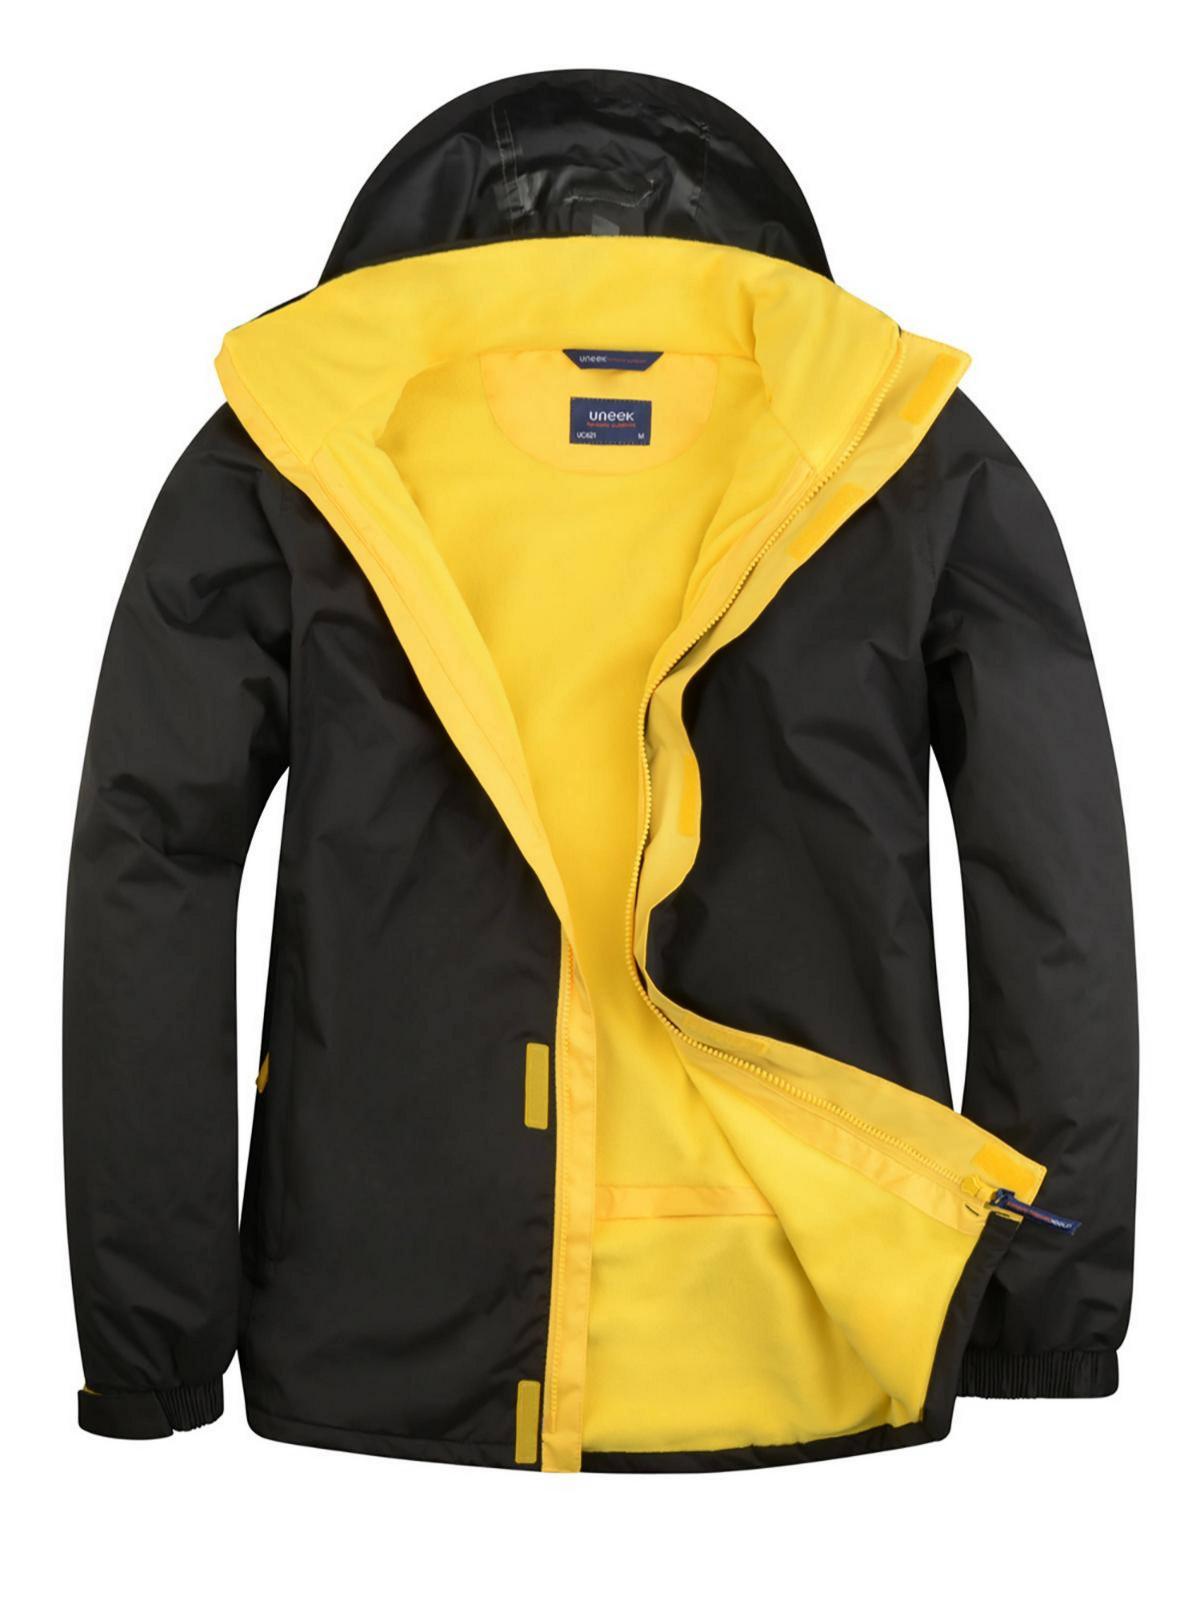 Uneek Deluxe Outdoor Jacket UC621 - Black/Submarine Yellow